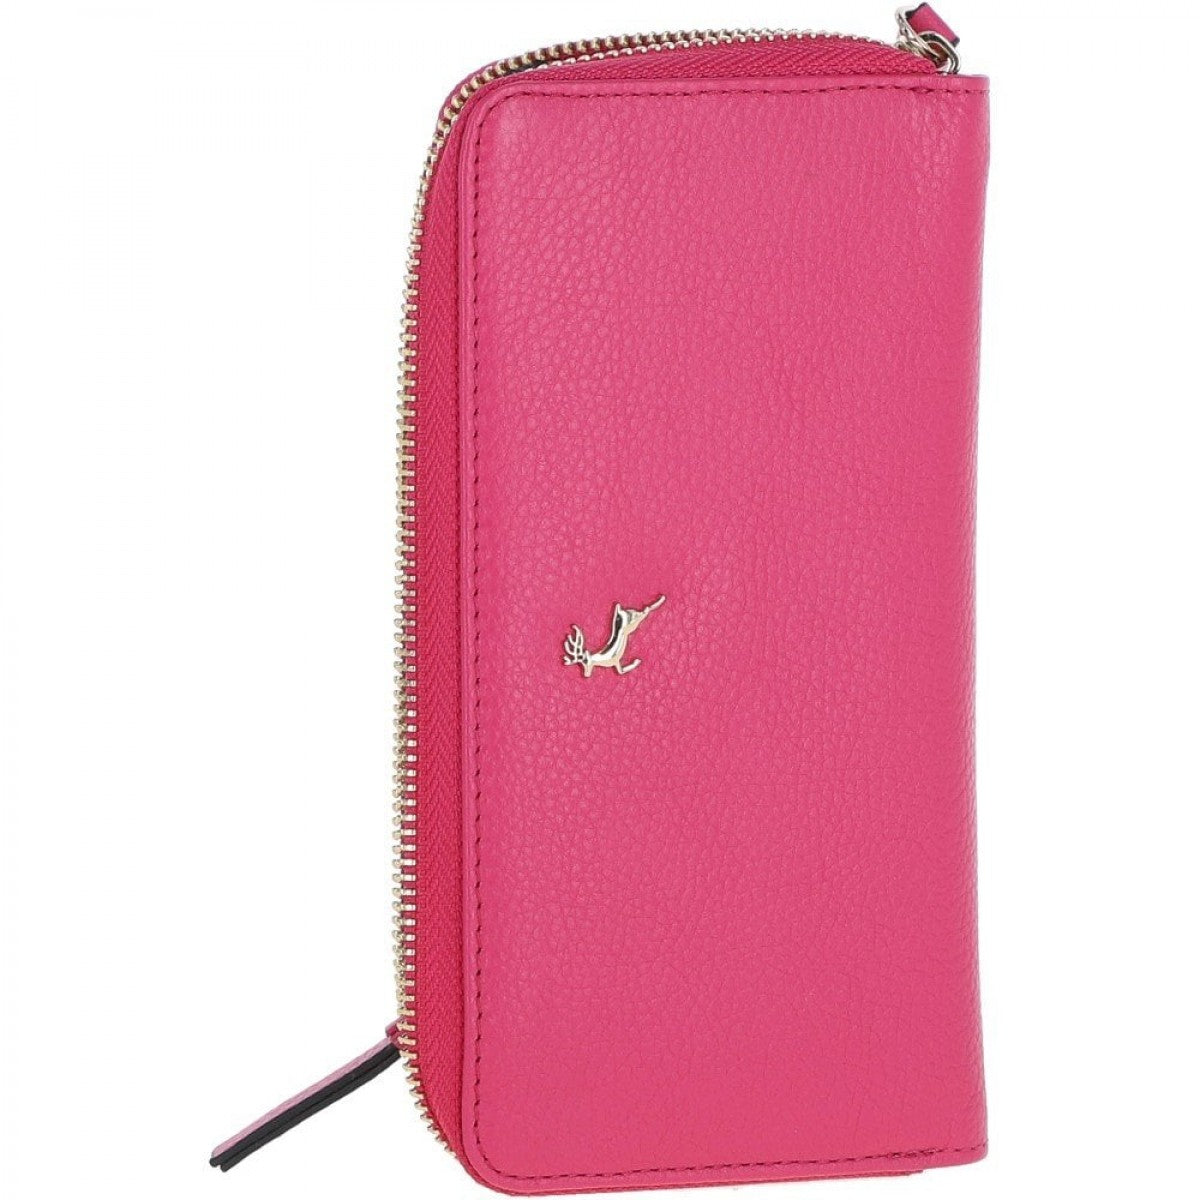 Жіночий гаманець клатч ASHWOOD J51 RASPBERRY-SORBET (Ягідний)